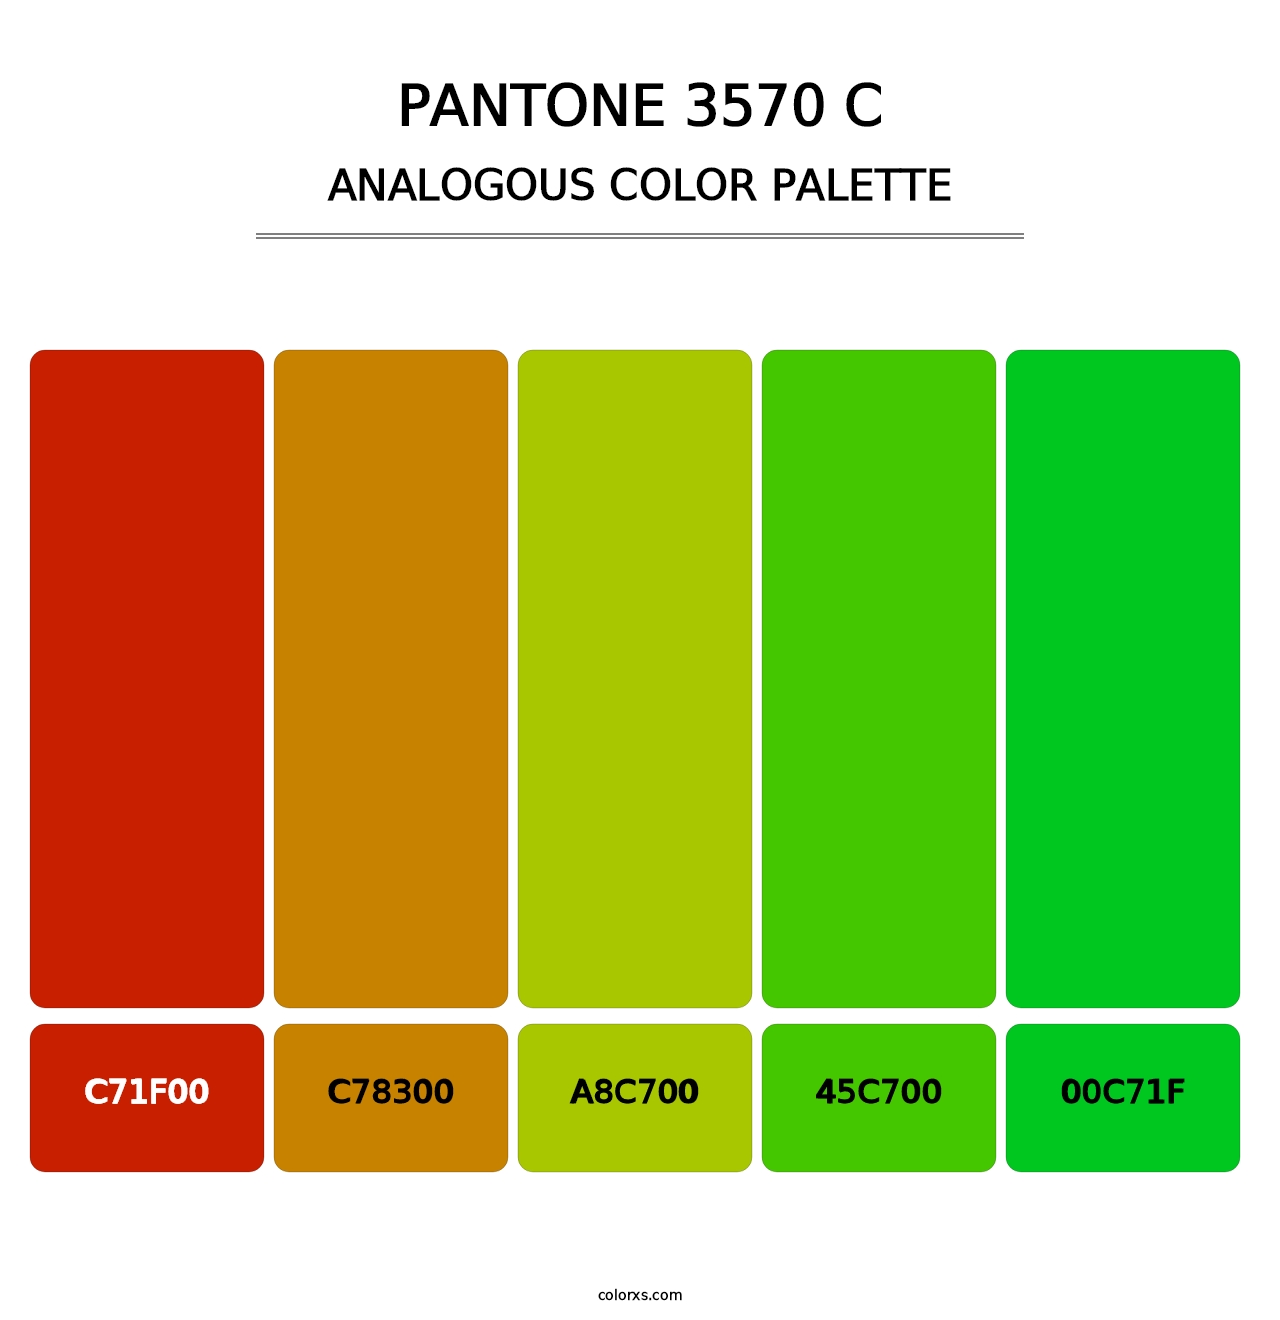 PANTONE 3570 C - Analogous Color Palette